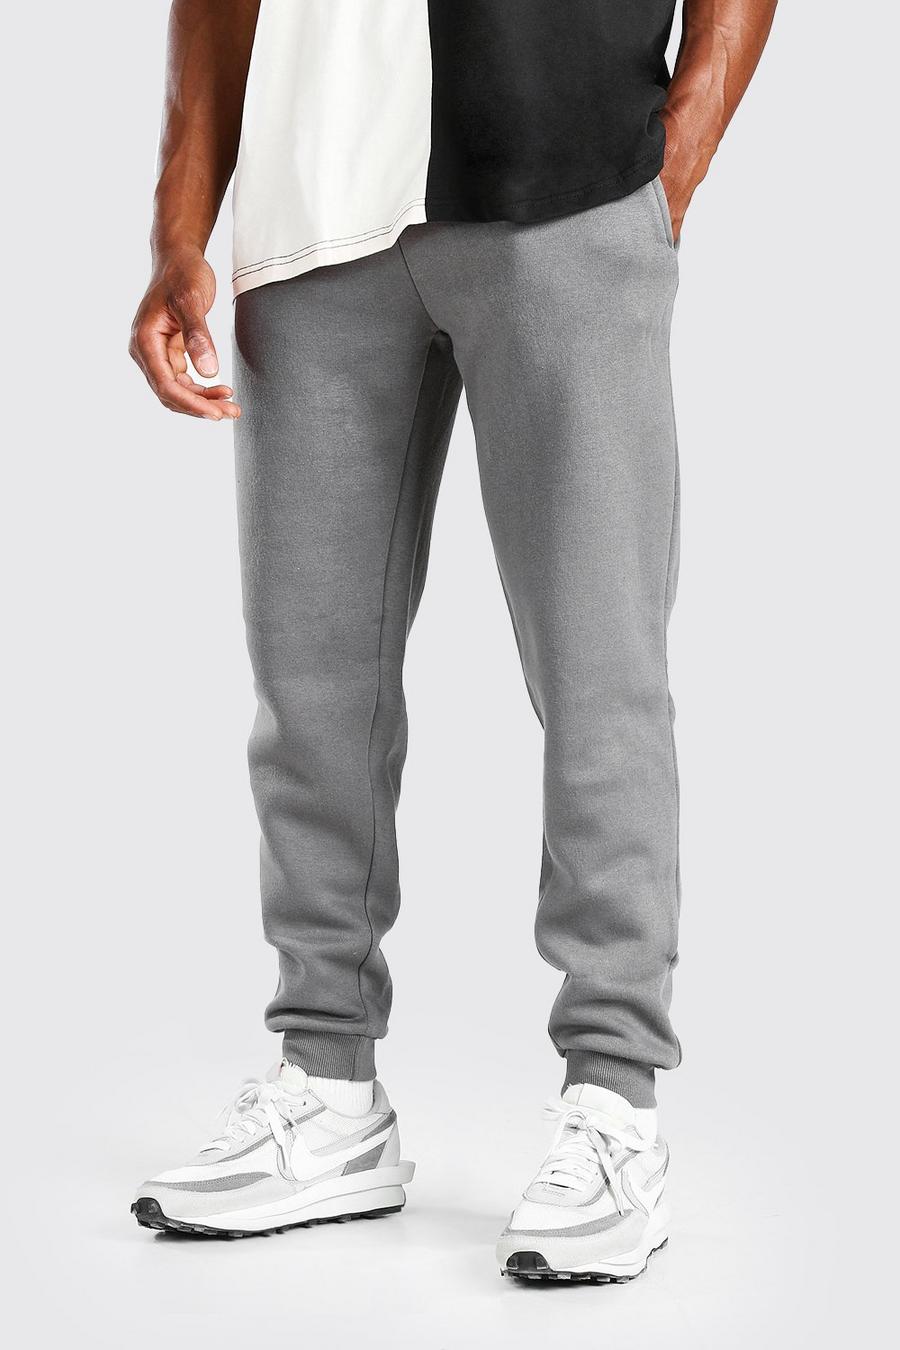 Pantalón deportivo básico ajustado, Gris marengo grigio